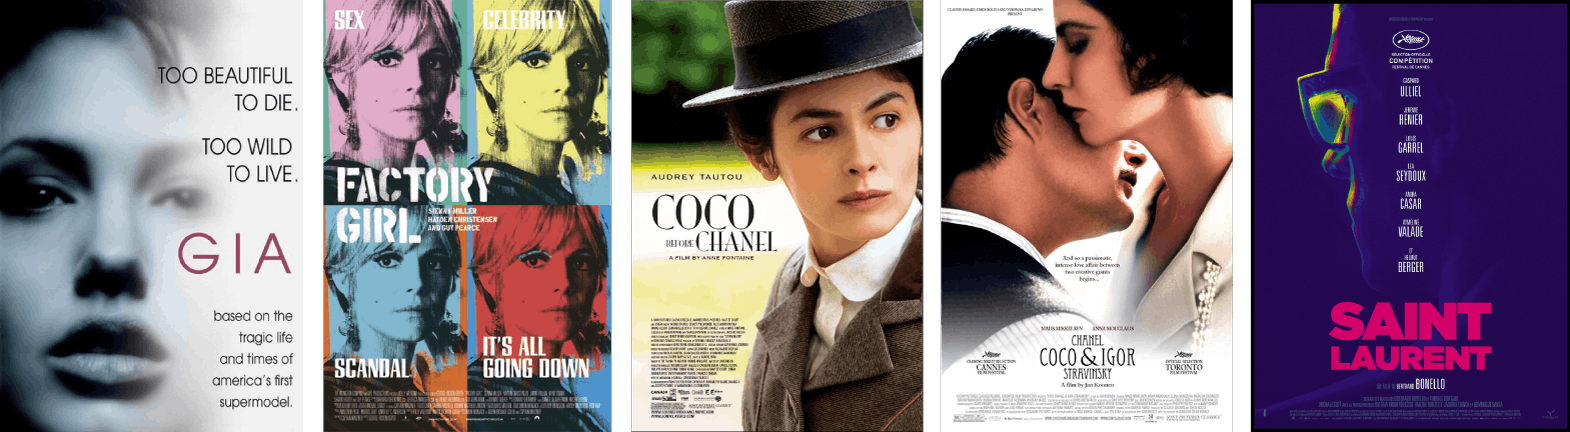  cinq posters de biopics sur la mode dont Gia, Factory Girl, Coco Before Chanel, et plus